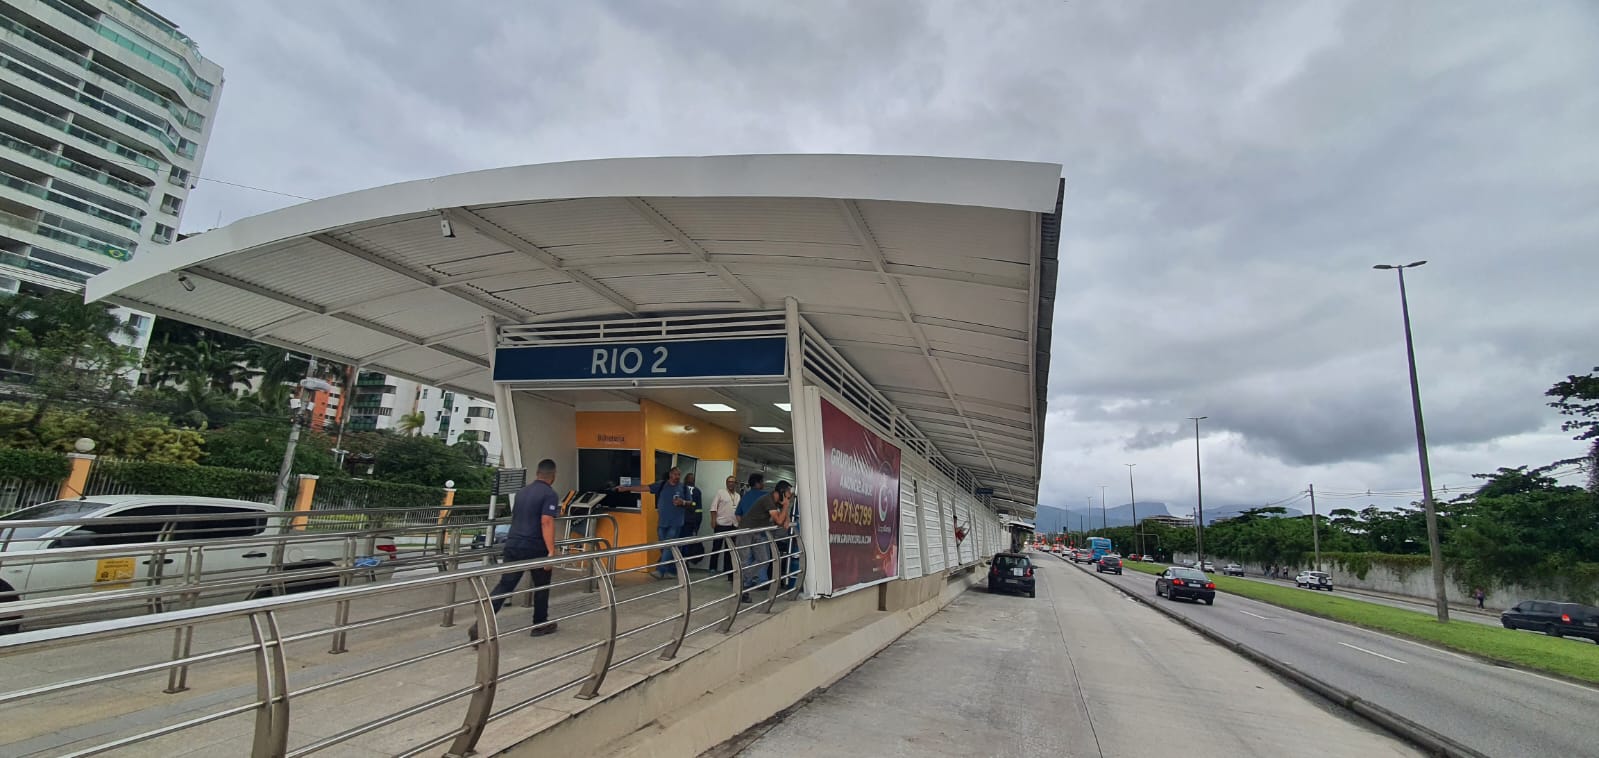 Estação Rio 2 - módulo parador - é reformada e reaberta na Zona Oeste